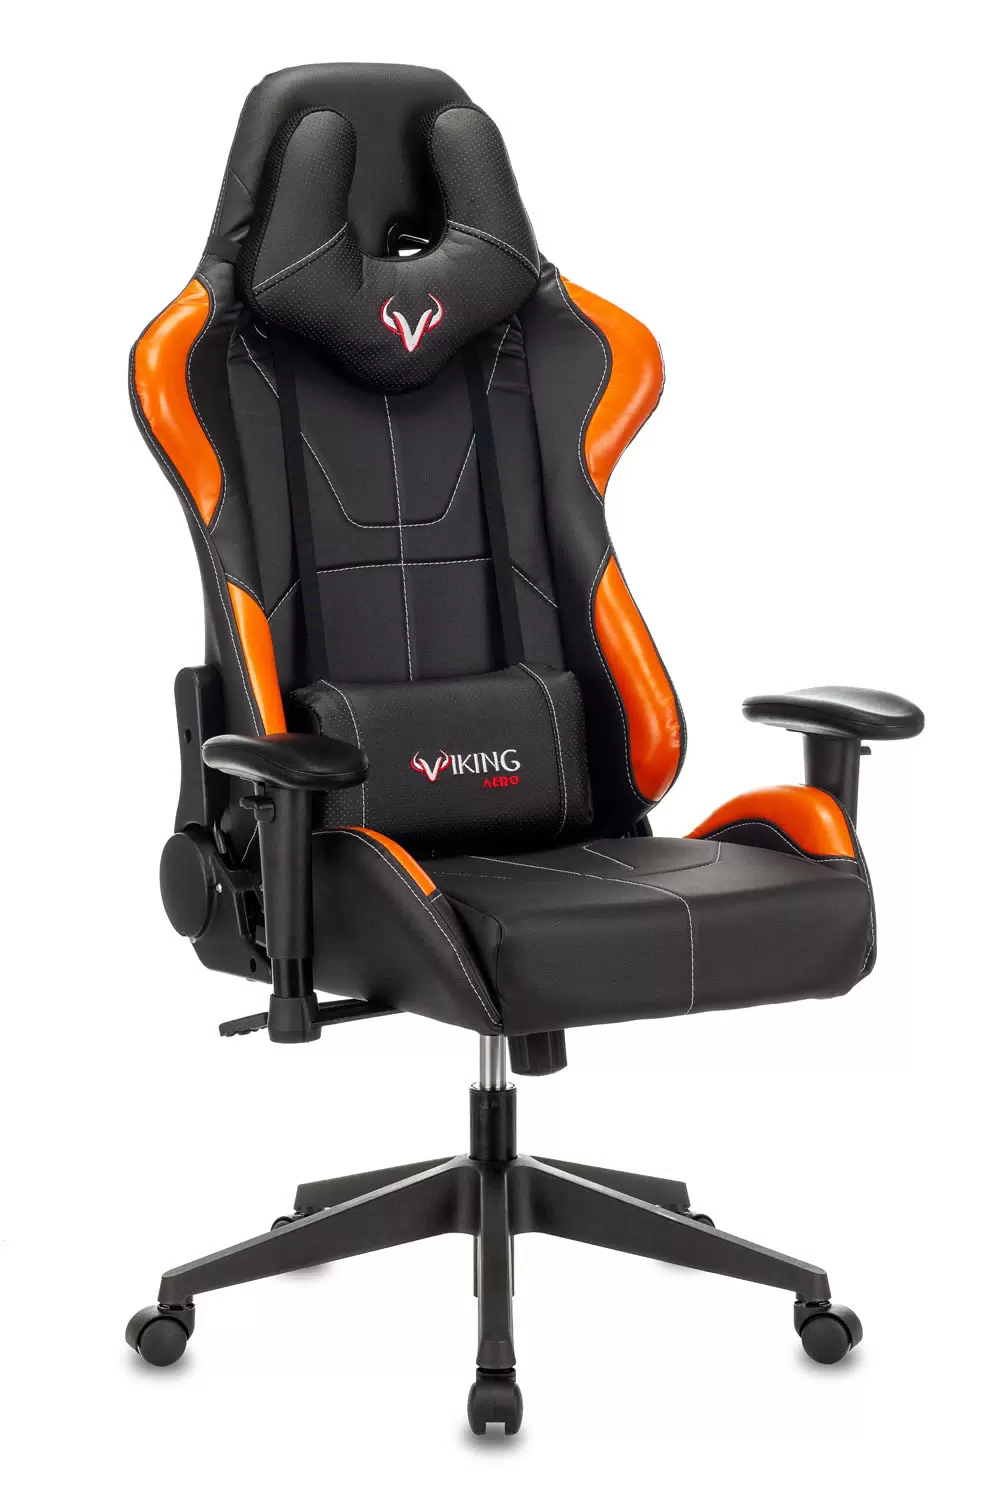 Кресло игровое ZOMBIE VIKING 5 AERO, оранжевый/черный [viking 5 aero orange] - VLARNIKA в Луганске